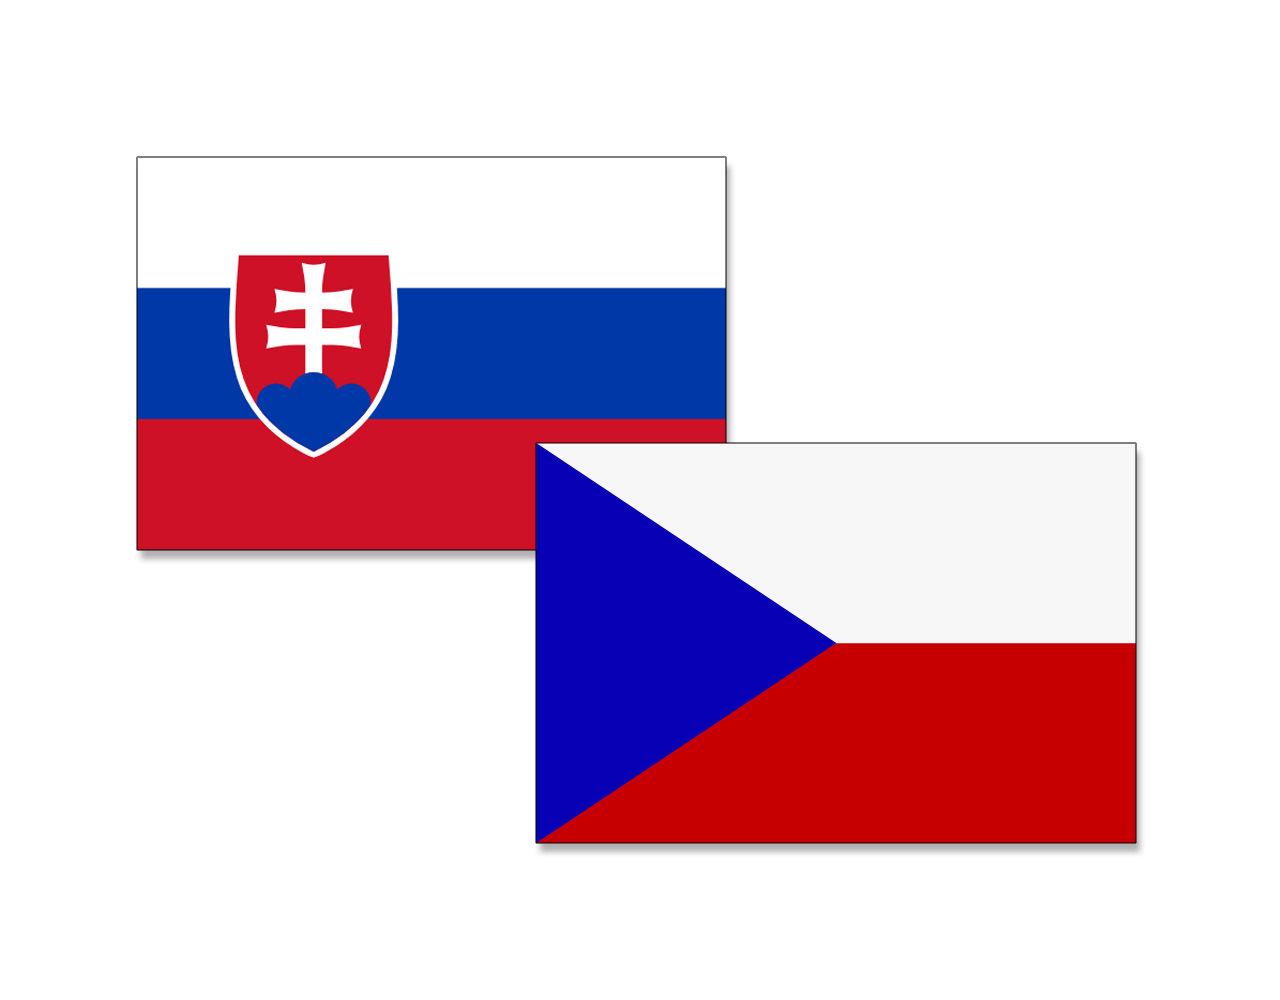 Le bandiere di Slovacchia e Repubblica Ceca